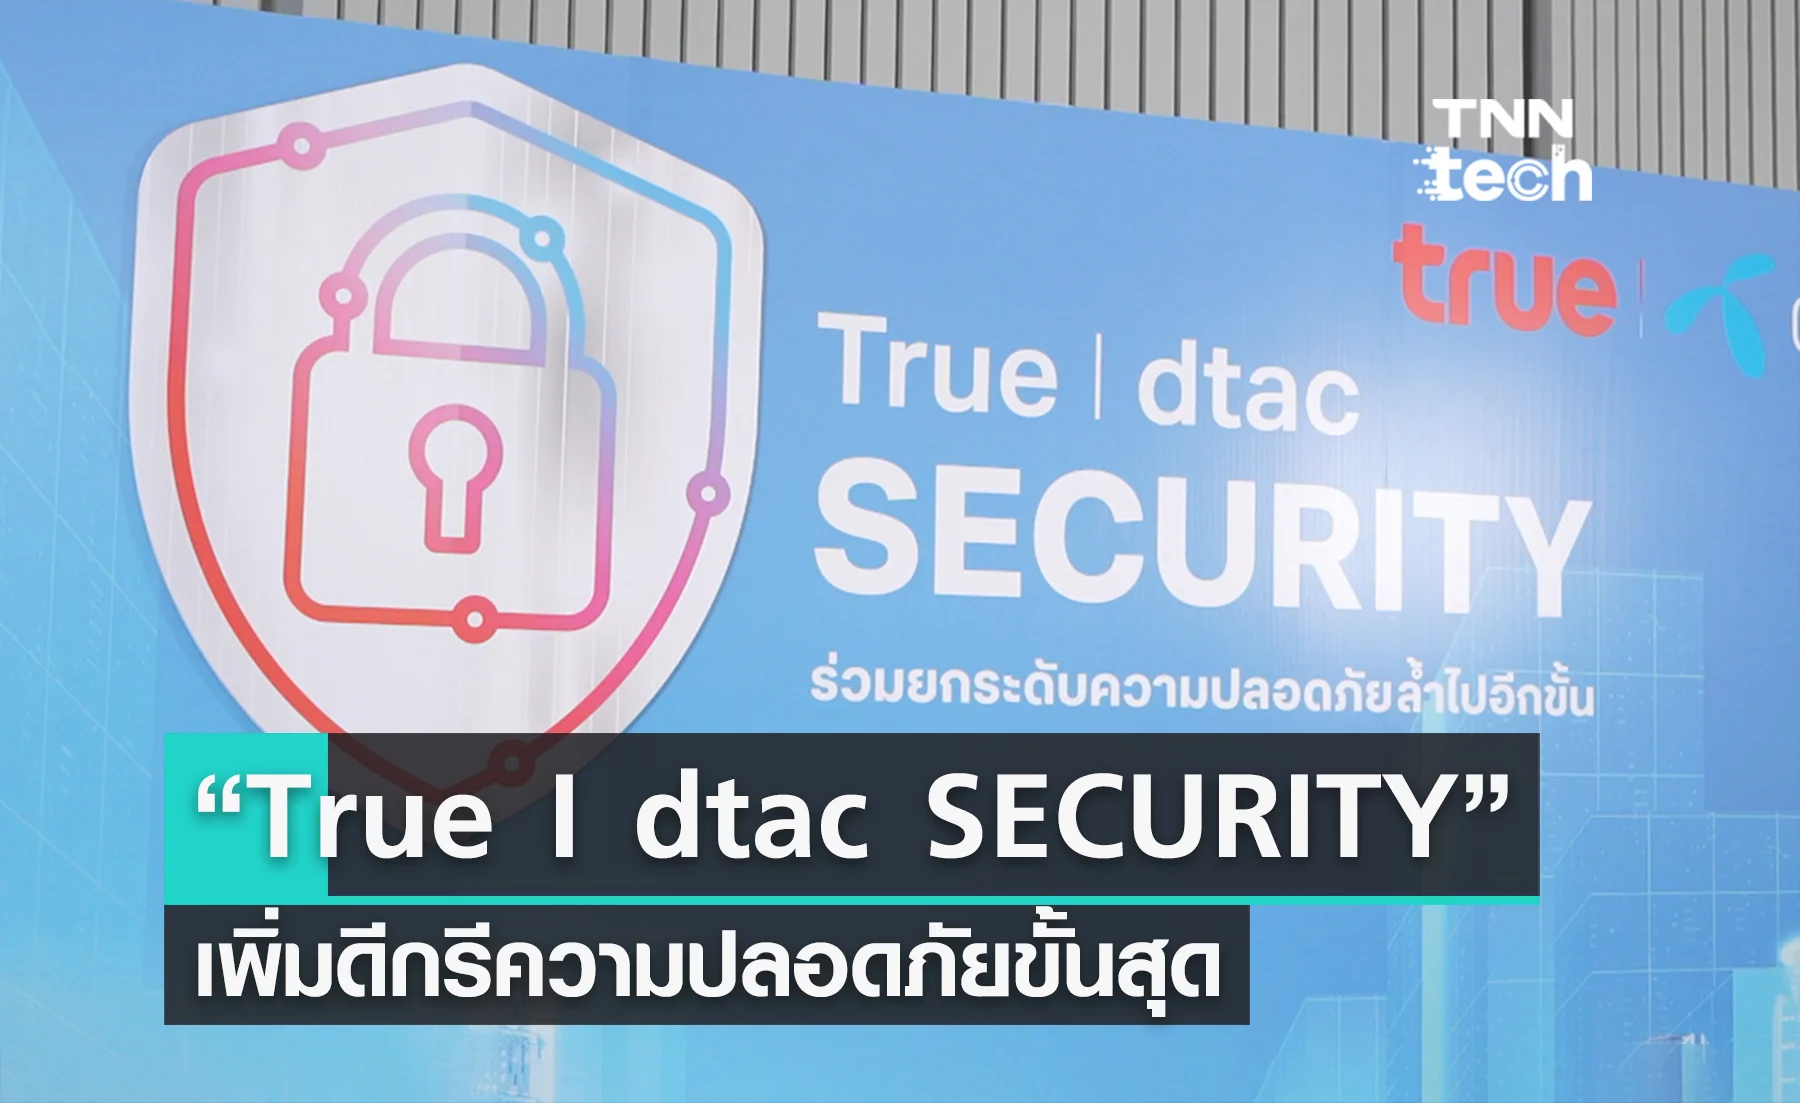 เผยโฉม “True I dtac SECURITY” เพิ่มดีกรีความปลอดภัยขั้นสุด